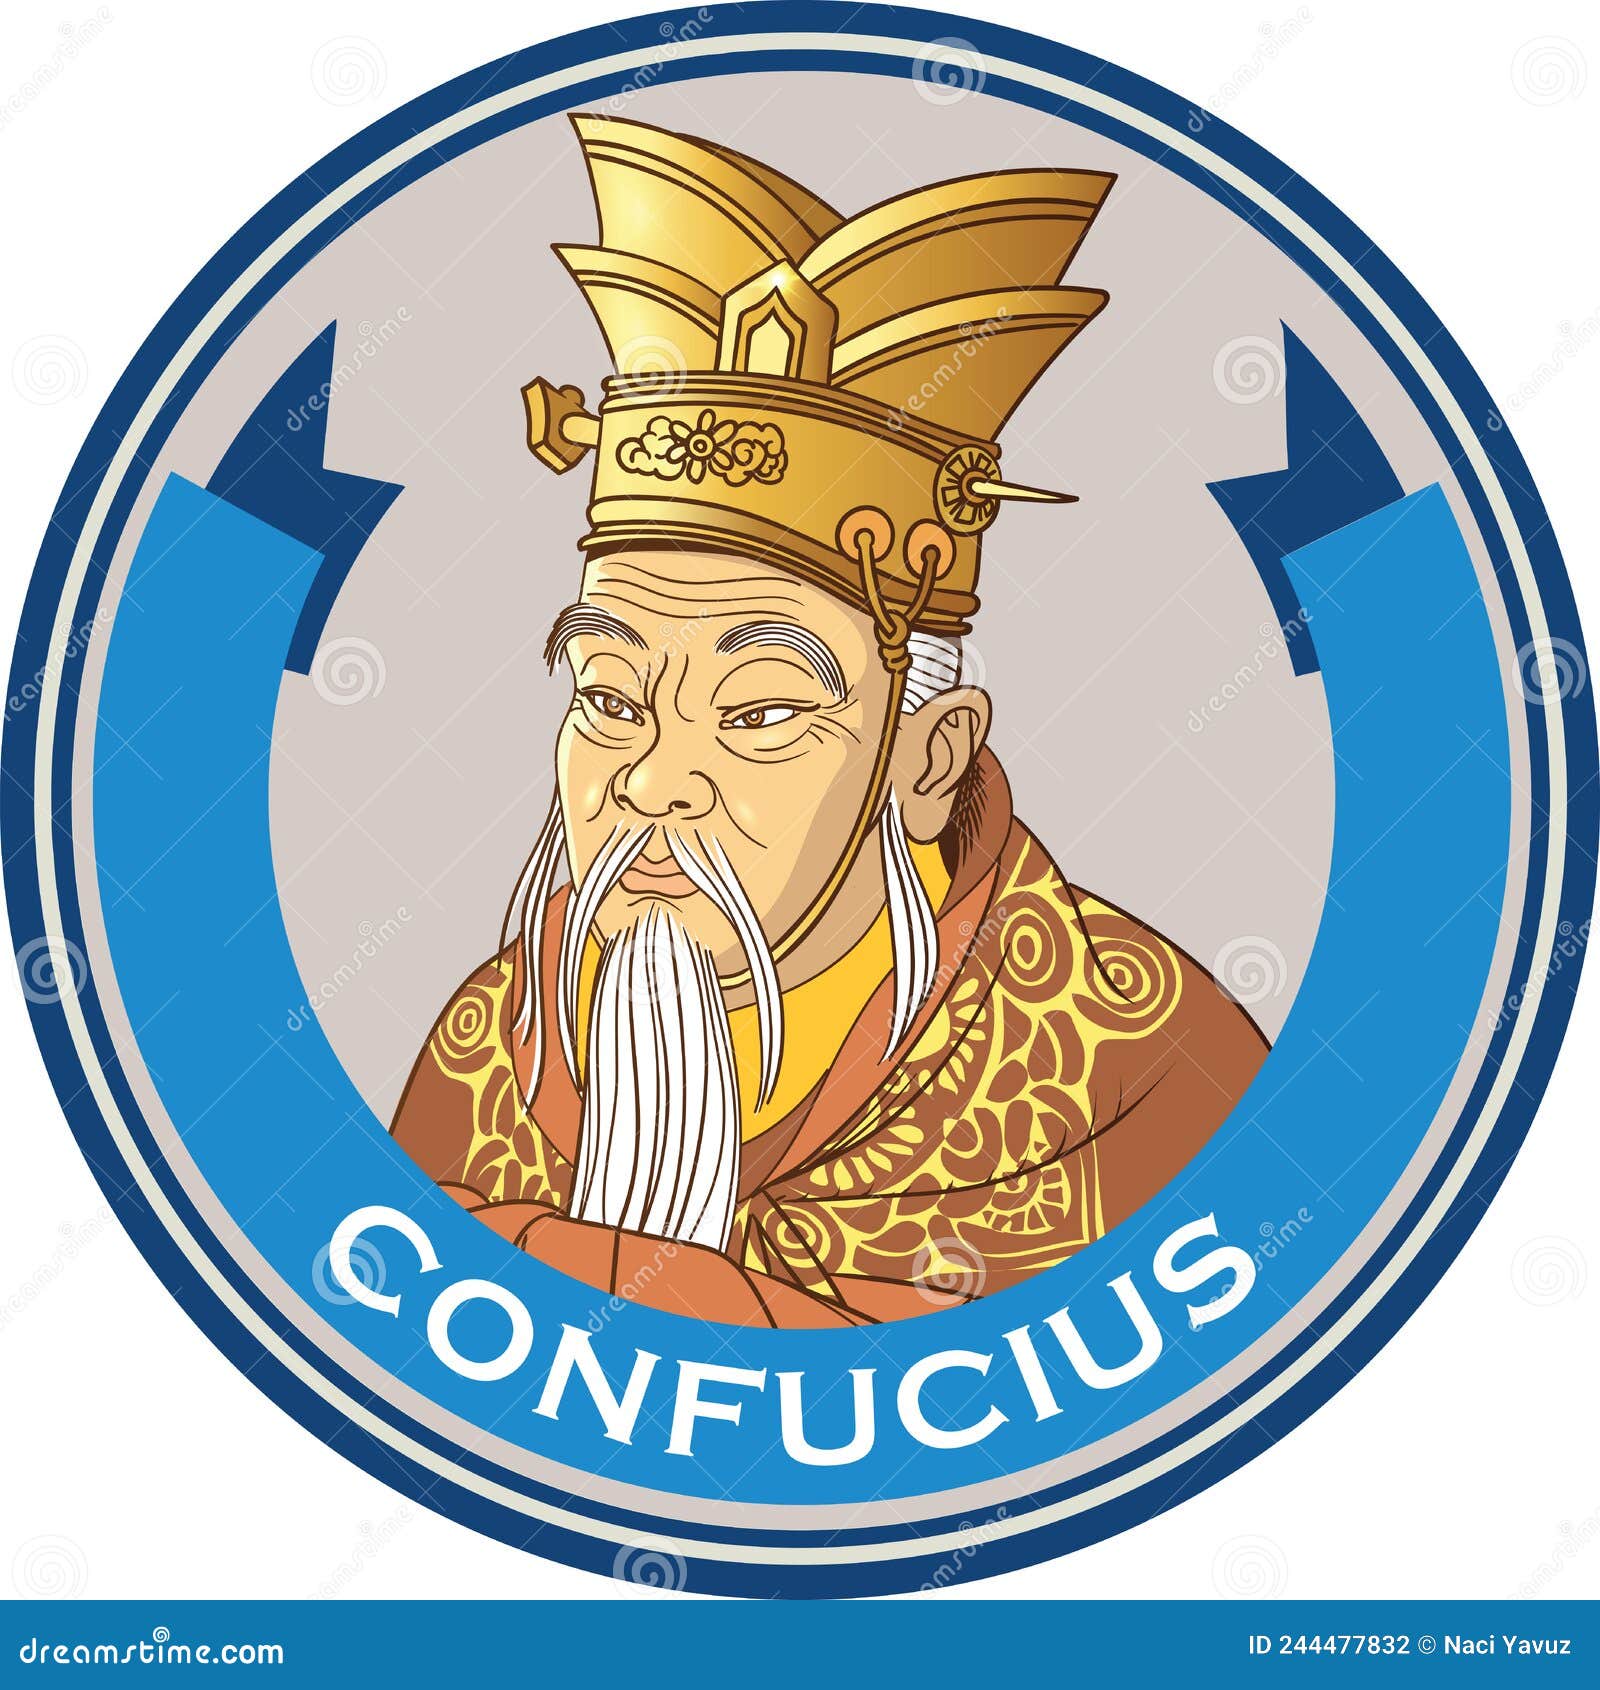 confucius  portrait in line art 